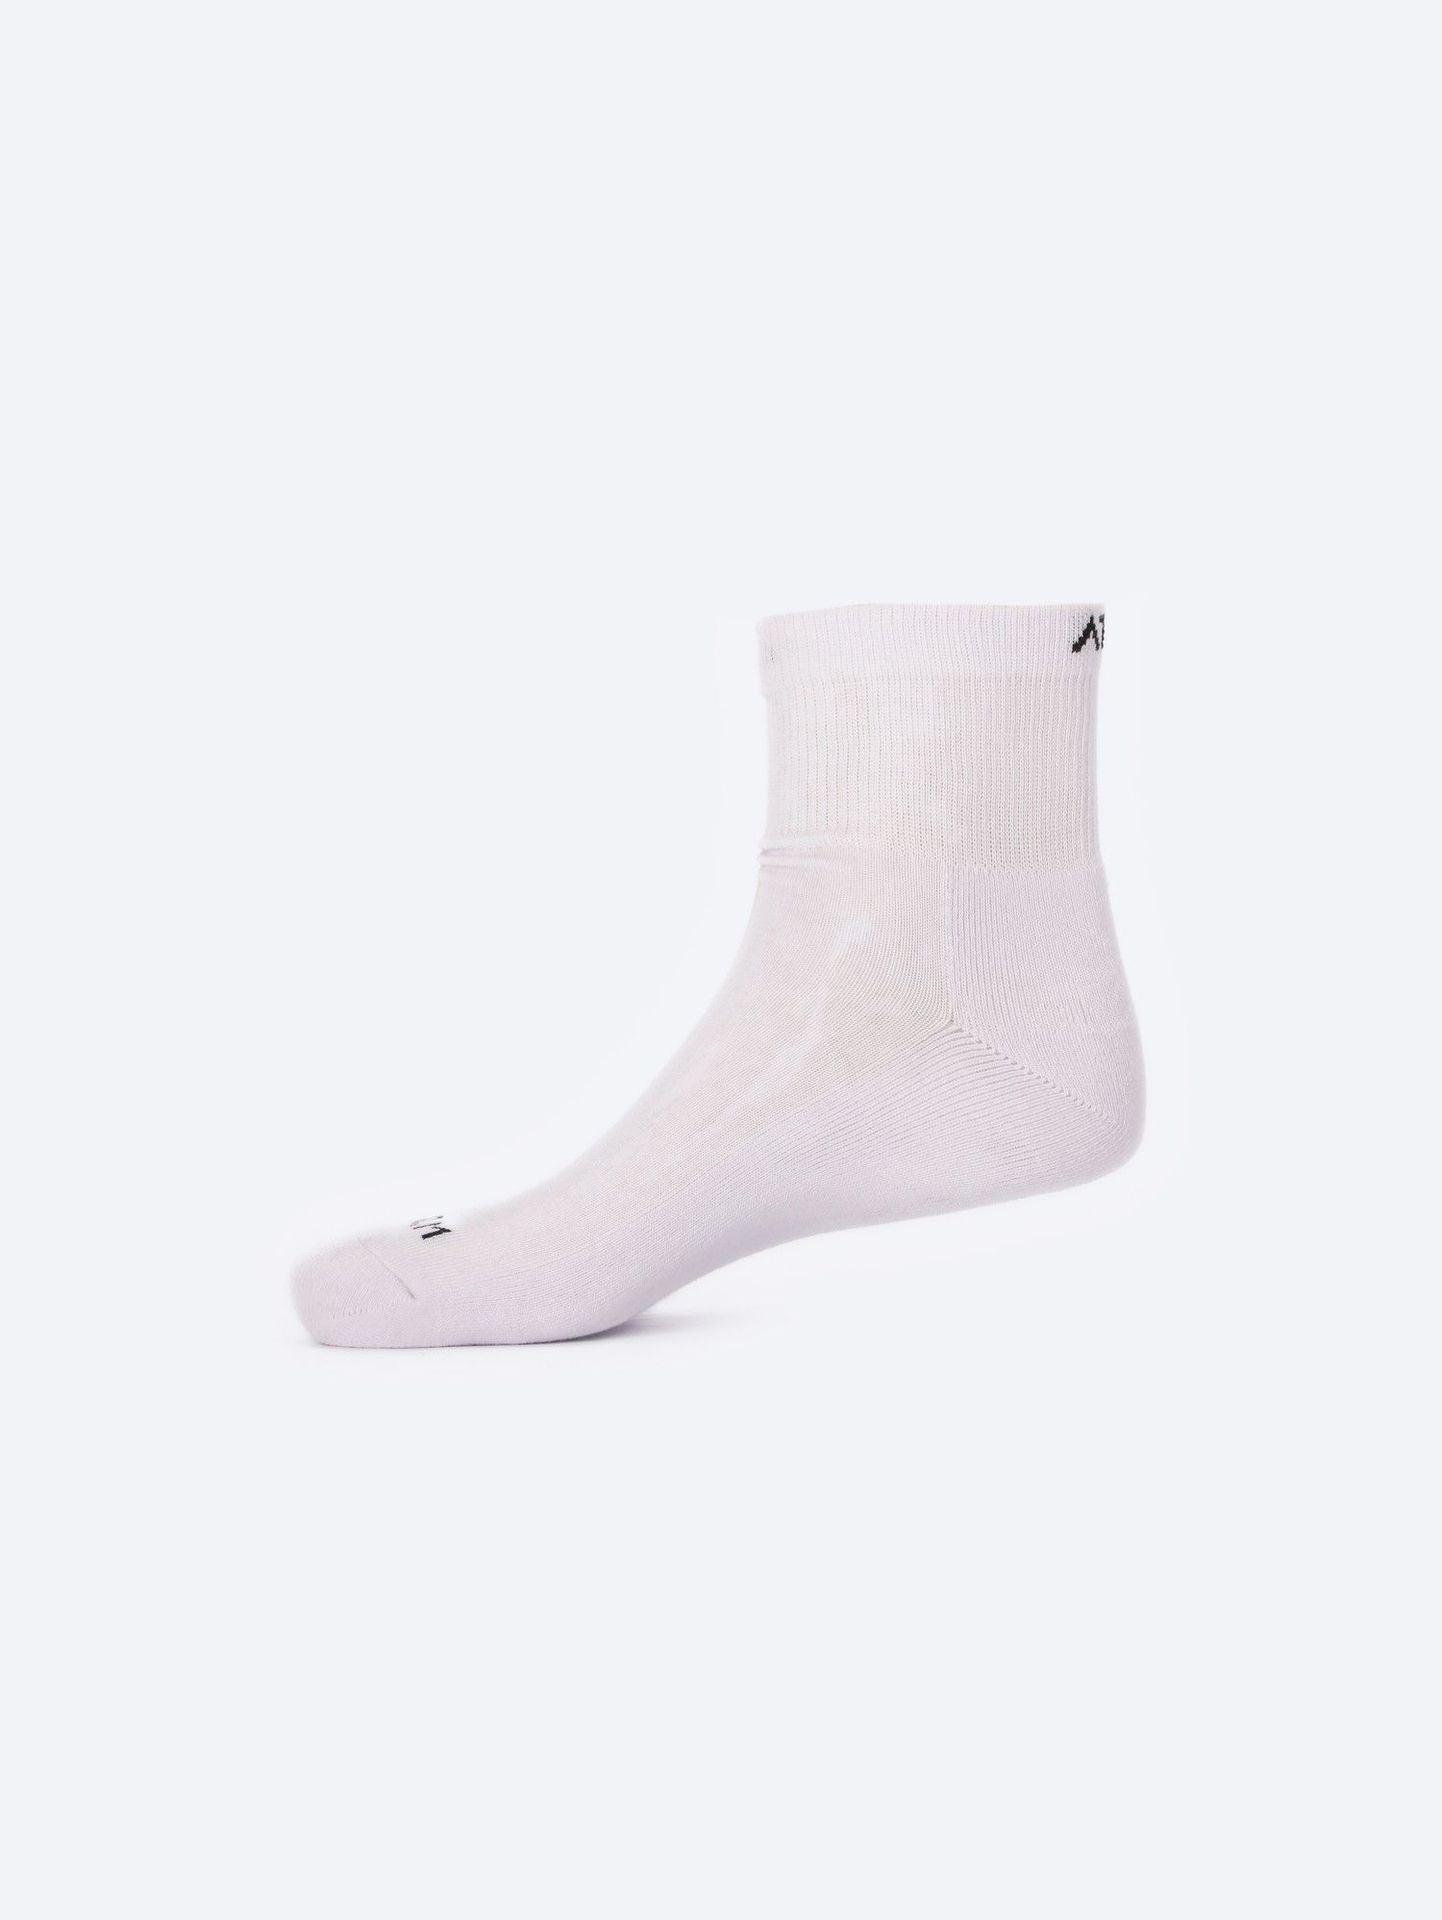 Photo by ð—”ð—§ð—¨ð— SPORTSWEAR Â® on December 26, 2022. May be of one white socks with atum logo.